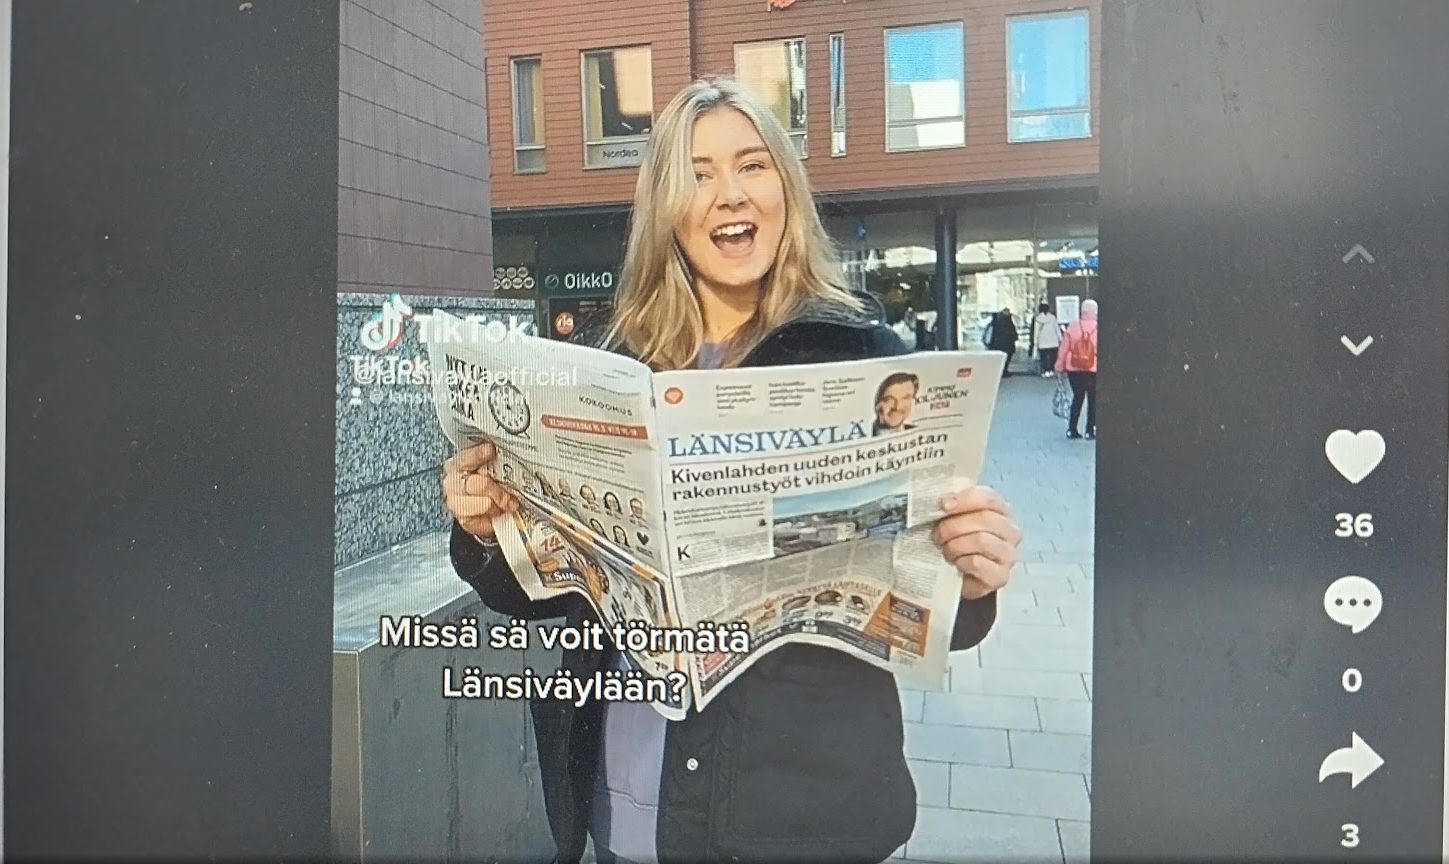 Pitkähiuksinen nainen seisoo ulkona ja hänellään on kädessään auki oleva Länsiväylä-lehti. Taustalla tiilirakennus. Kuvakaappaus tiktok-videosta.